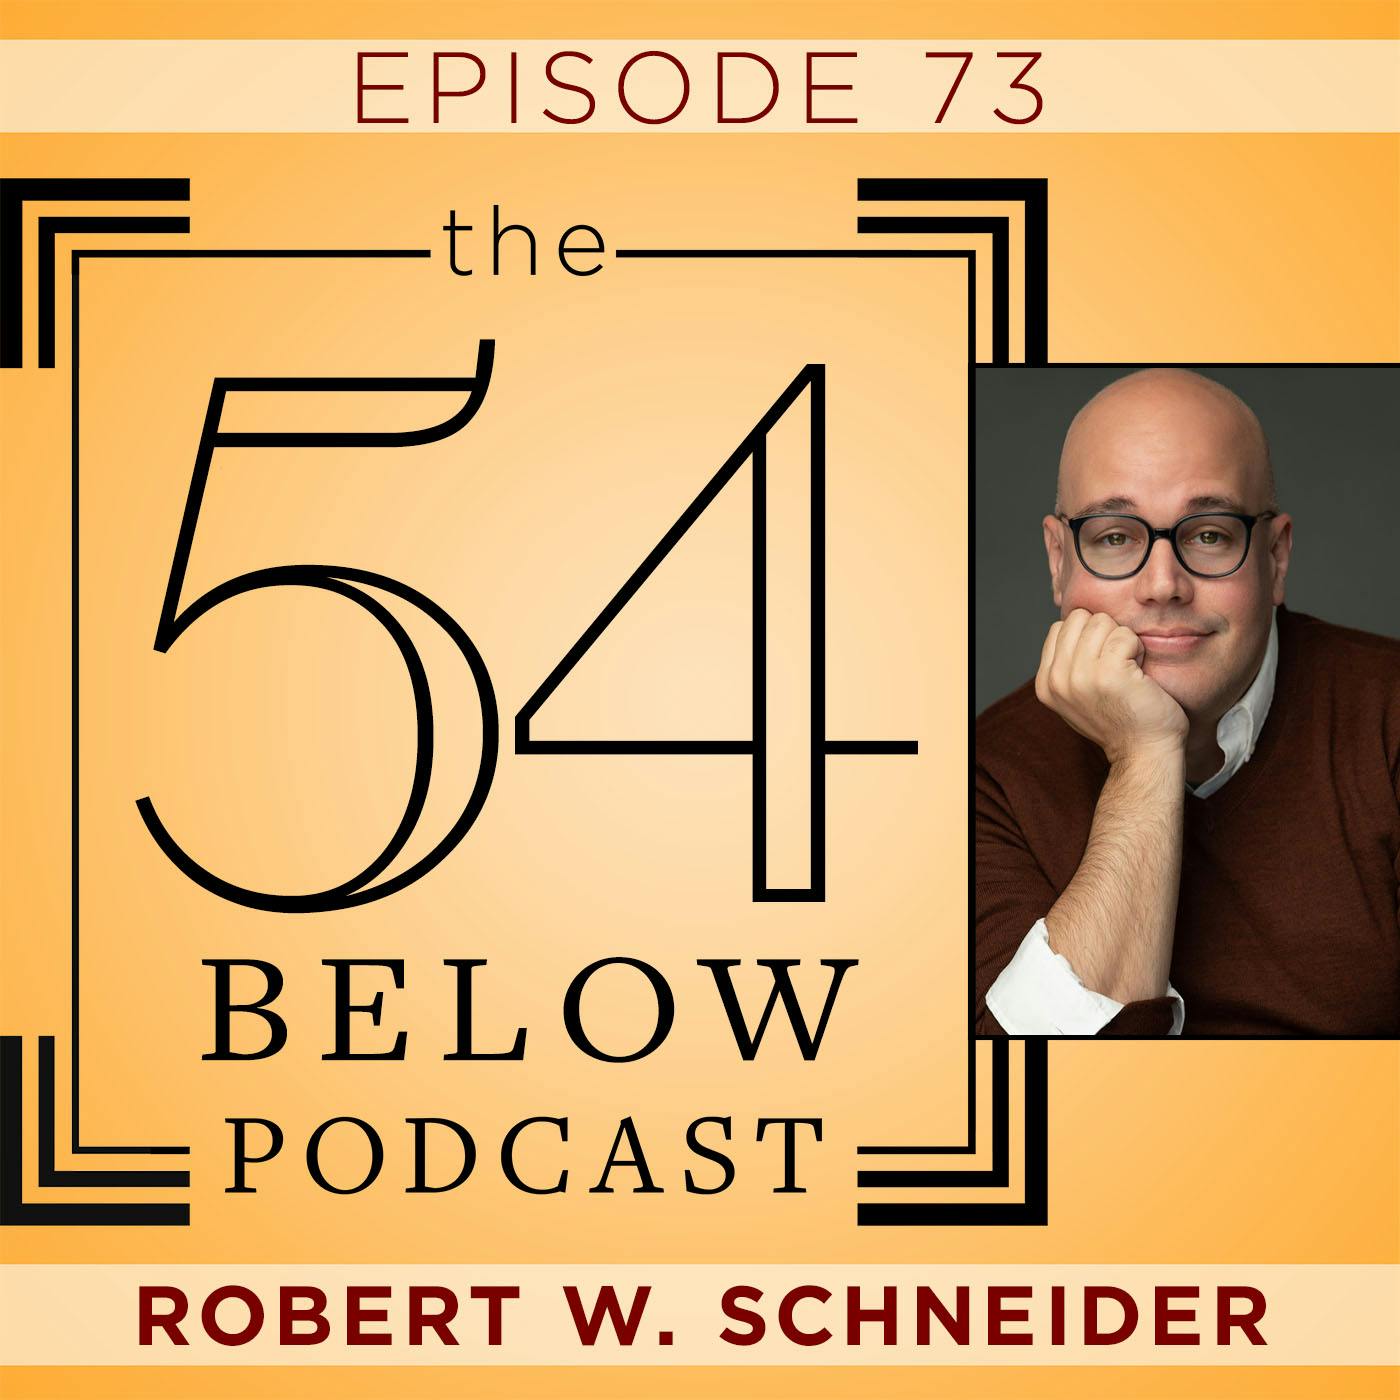 Episode 73: ROBERT W. SCHNEIDER